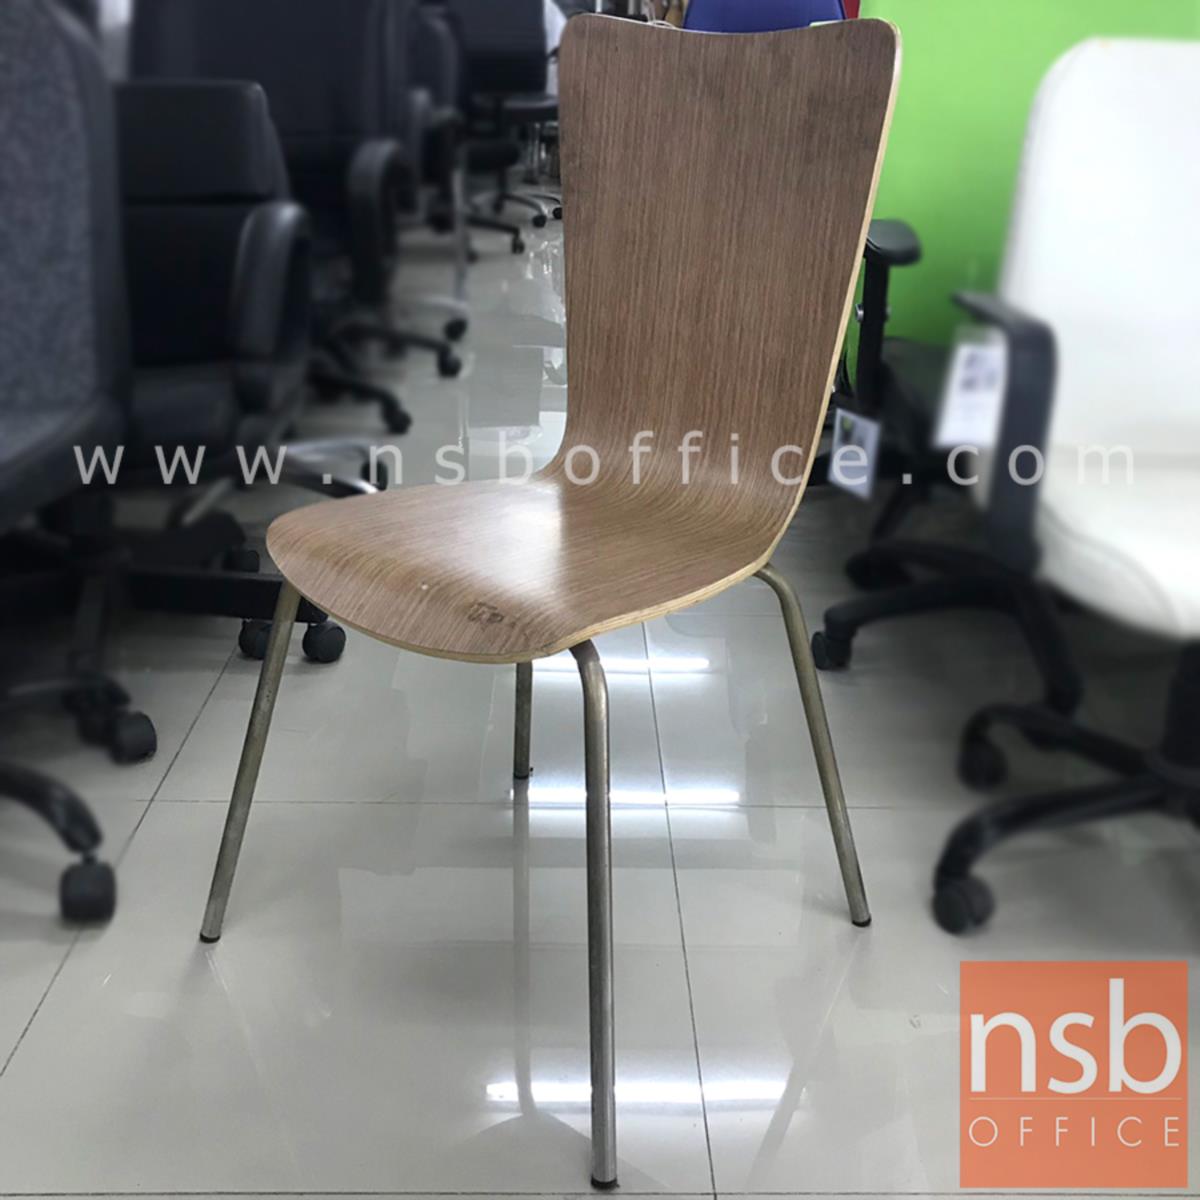 เก้าอี้ไม้ รุ่น NSB-CHAIR26 ขนาด 39W*87H cm. โครงเหล็กชุบโครเมี่ยม (STOCK-1 ตัว)